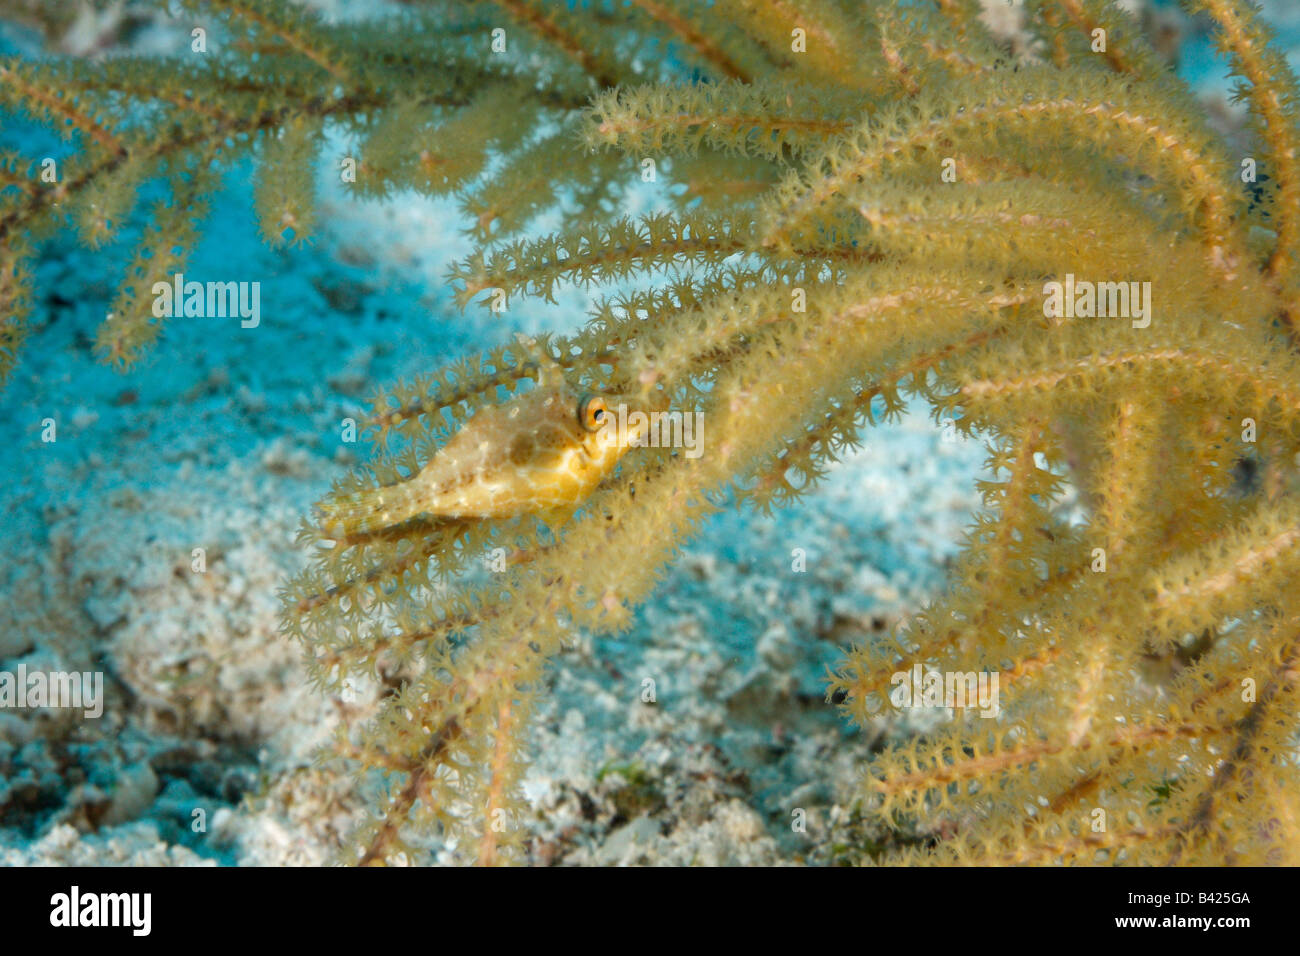 Un petit cache des balistes mince entre les branches, camouflé pour correspondre à la couleur du corail avec foredorsal étendu dos Banque D'Images